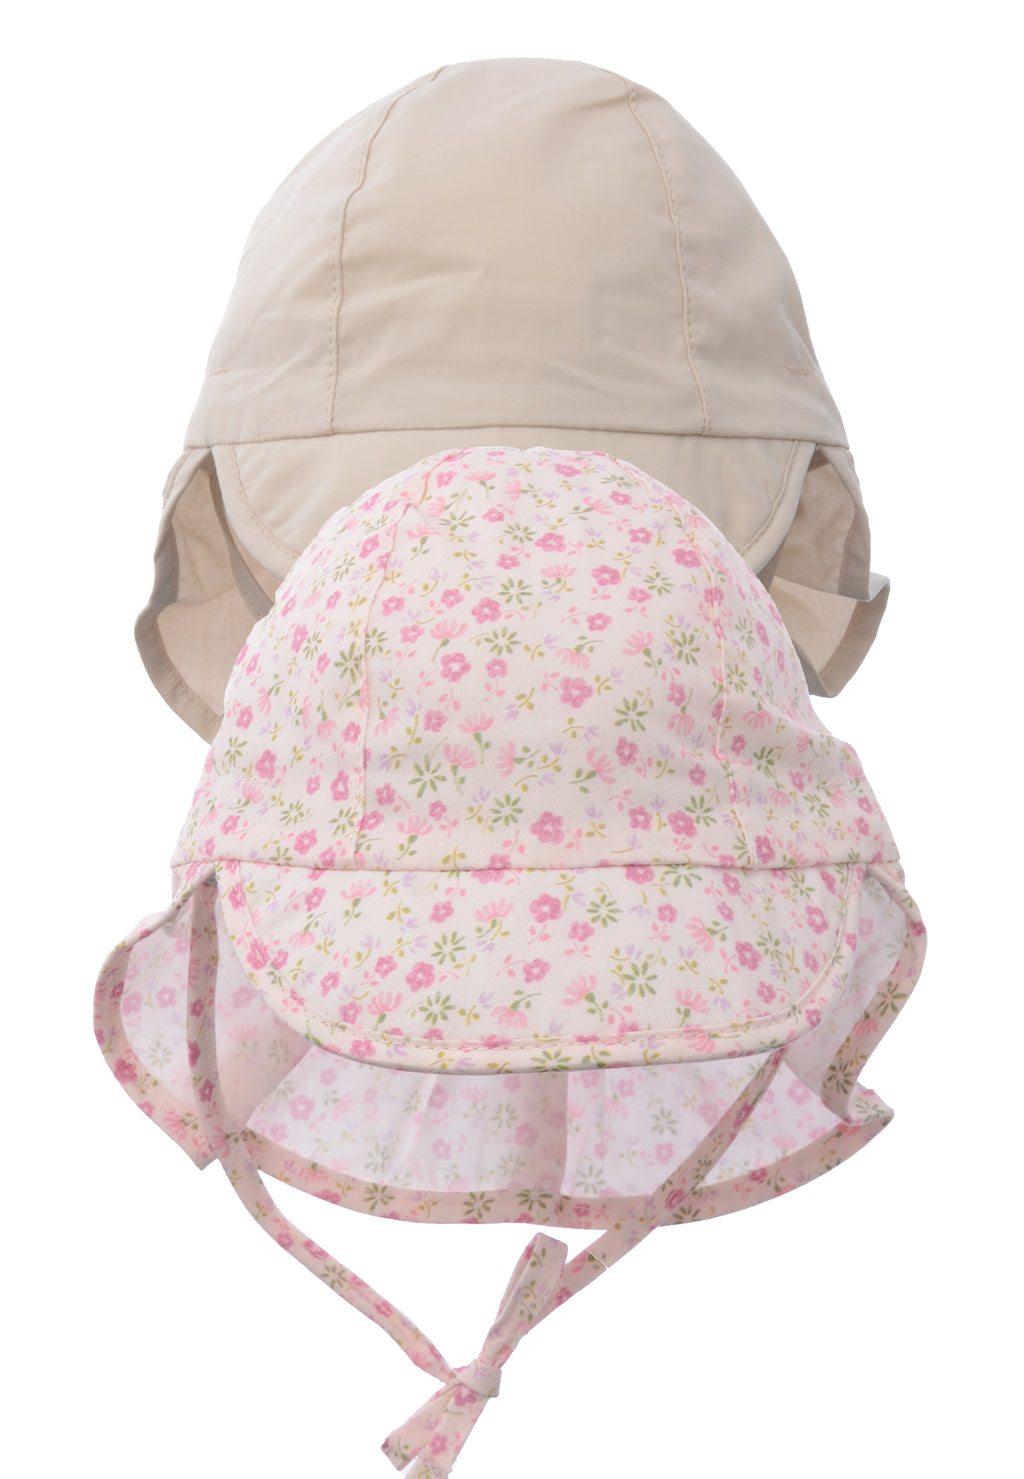 Doppelpack Schirmmützen mit Nackenschutz und Bindeband in beige und einmal in rosa mit Blümchenprint.